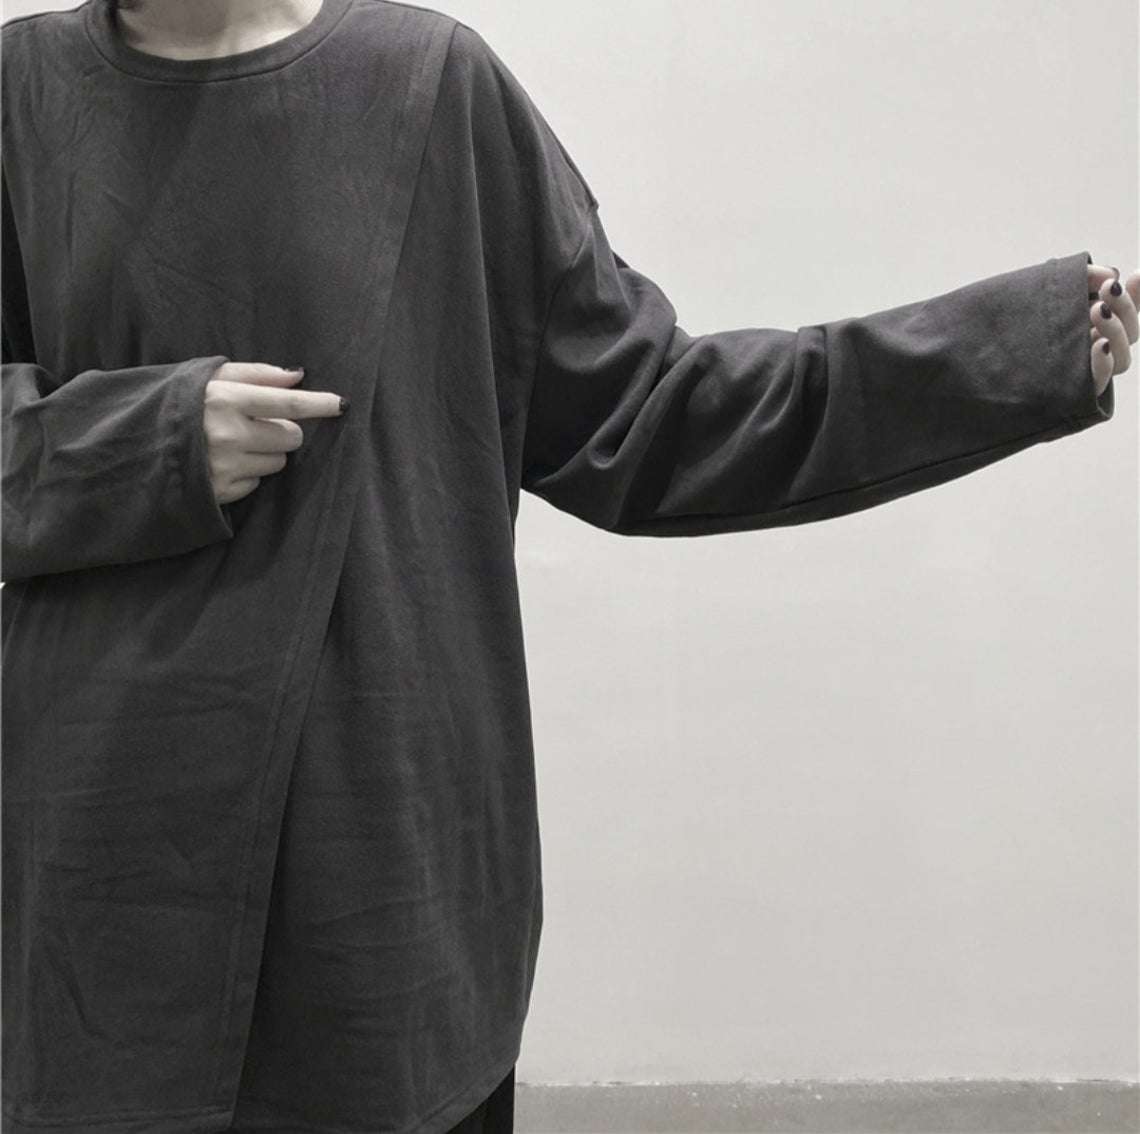 SHINOBI Men's Two Piece Look Long-Sleeve T-shirt